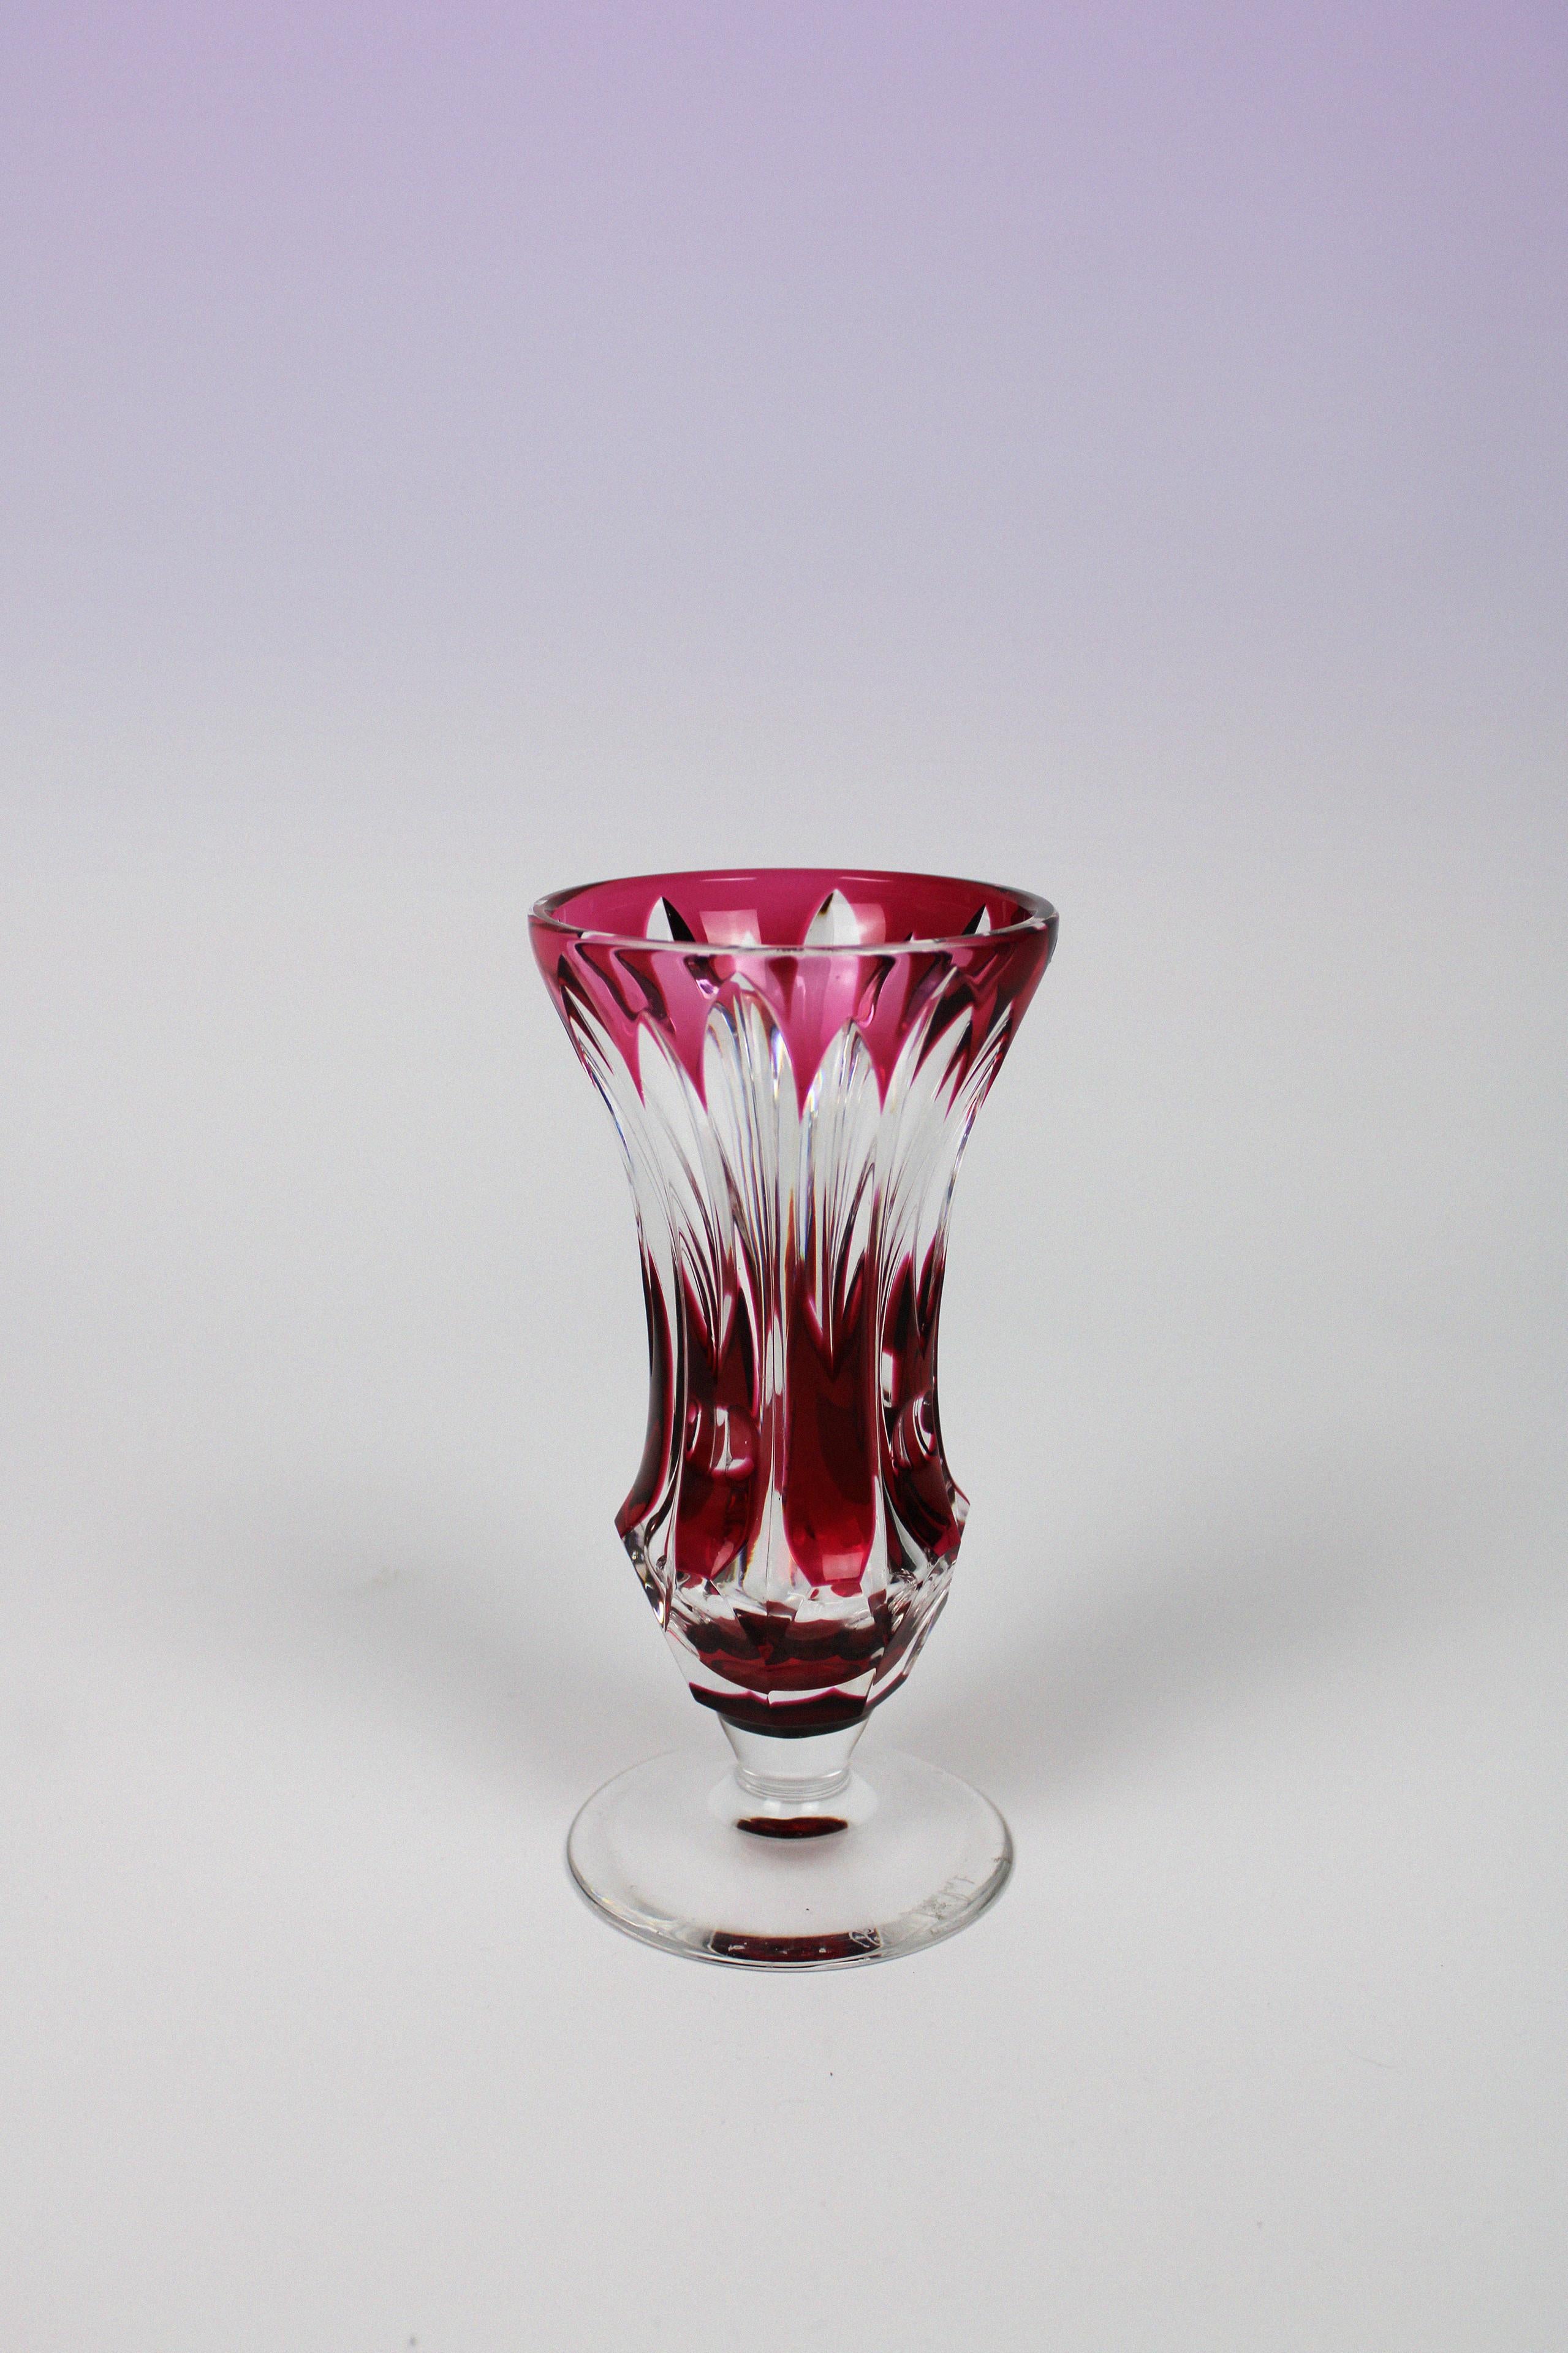 Ce vase original et adorable de Val St. Lambert, une manufacture belge connue pour sa verrerie, montre également avec ce vase rouge qu'il vaut son nom. La forme mignonne courbée court avec un relief qui varie entre le verre rouge et le verre